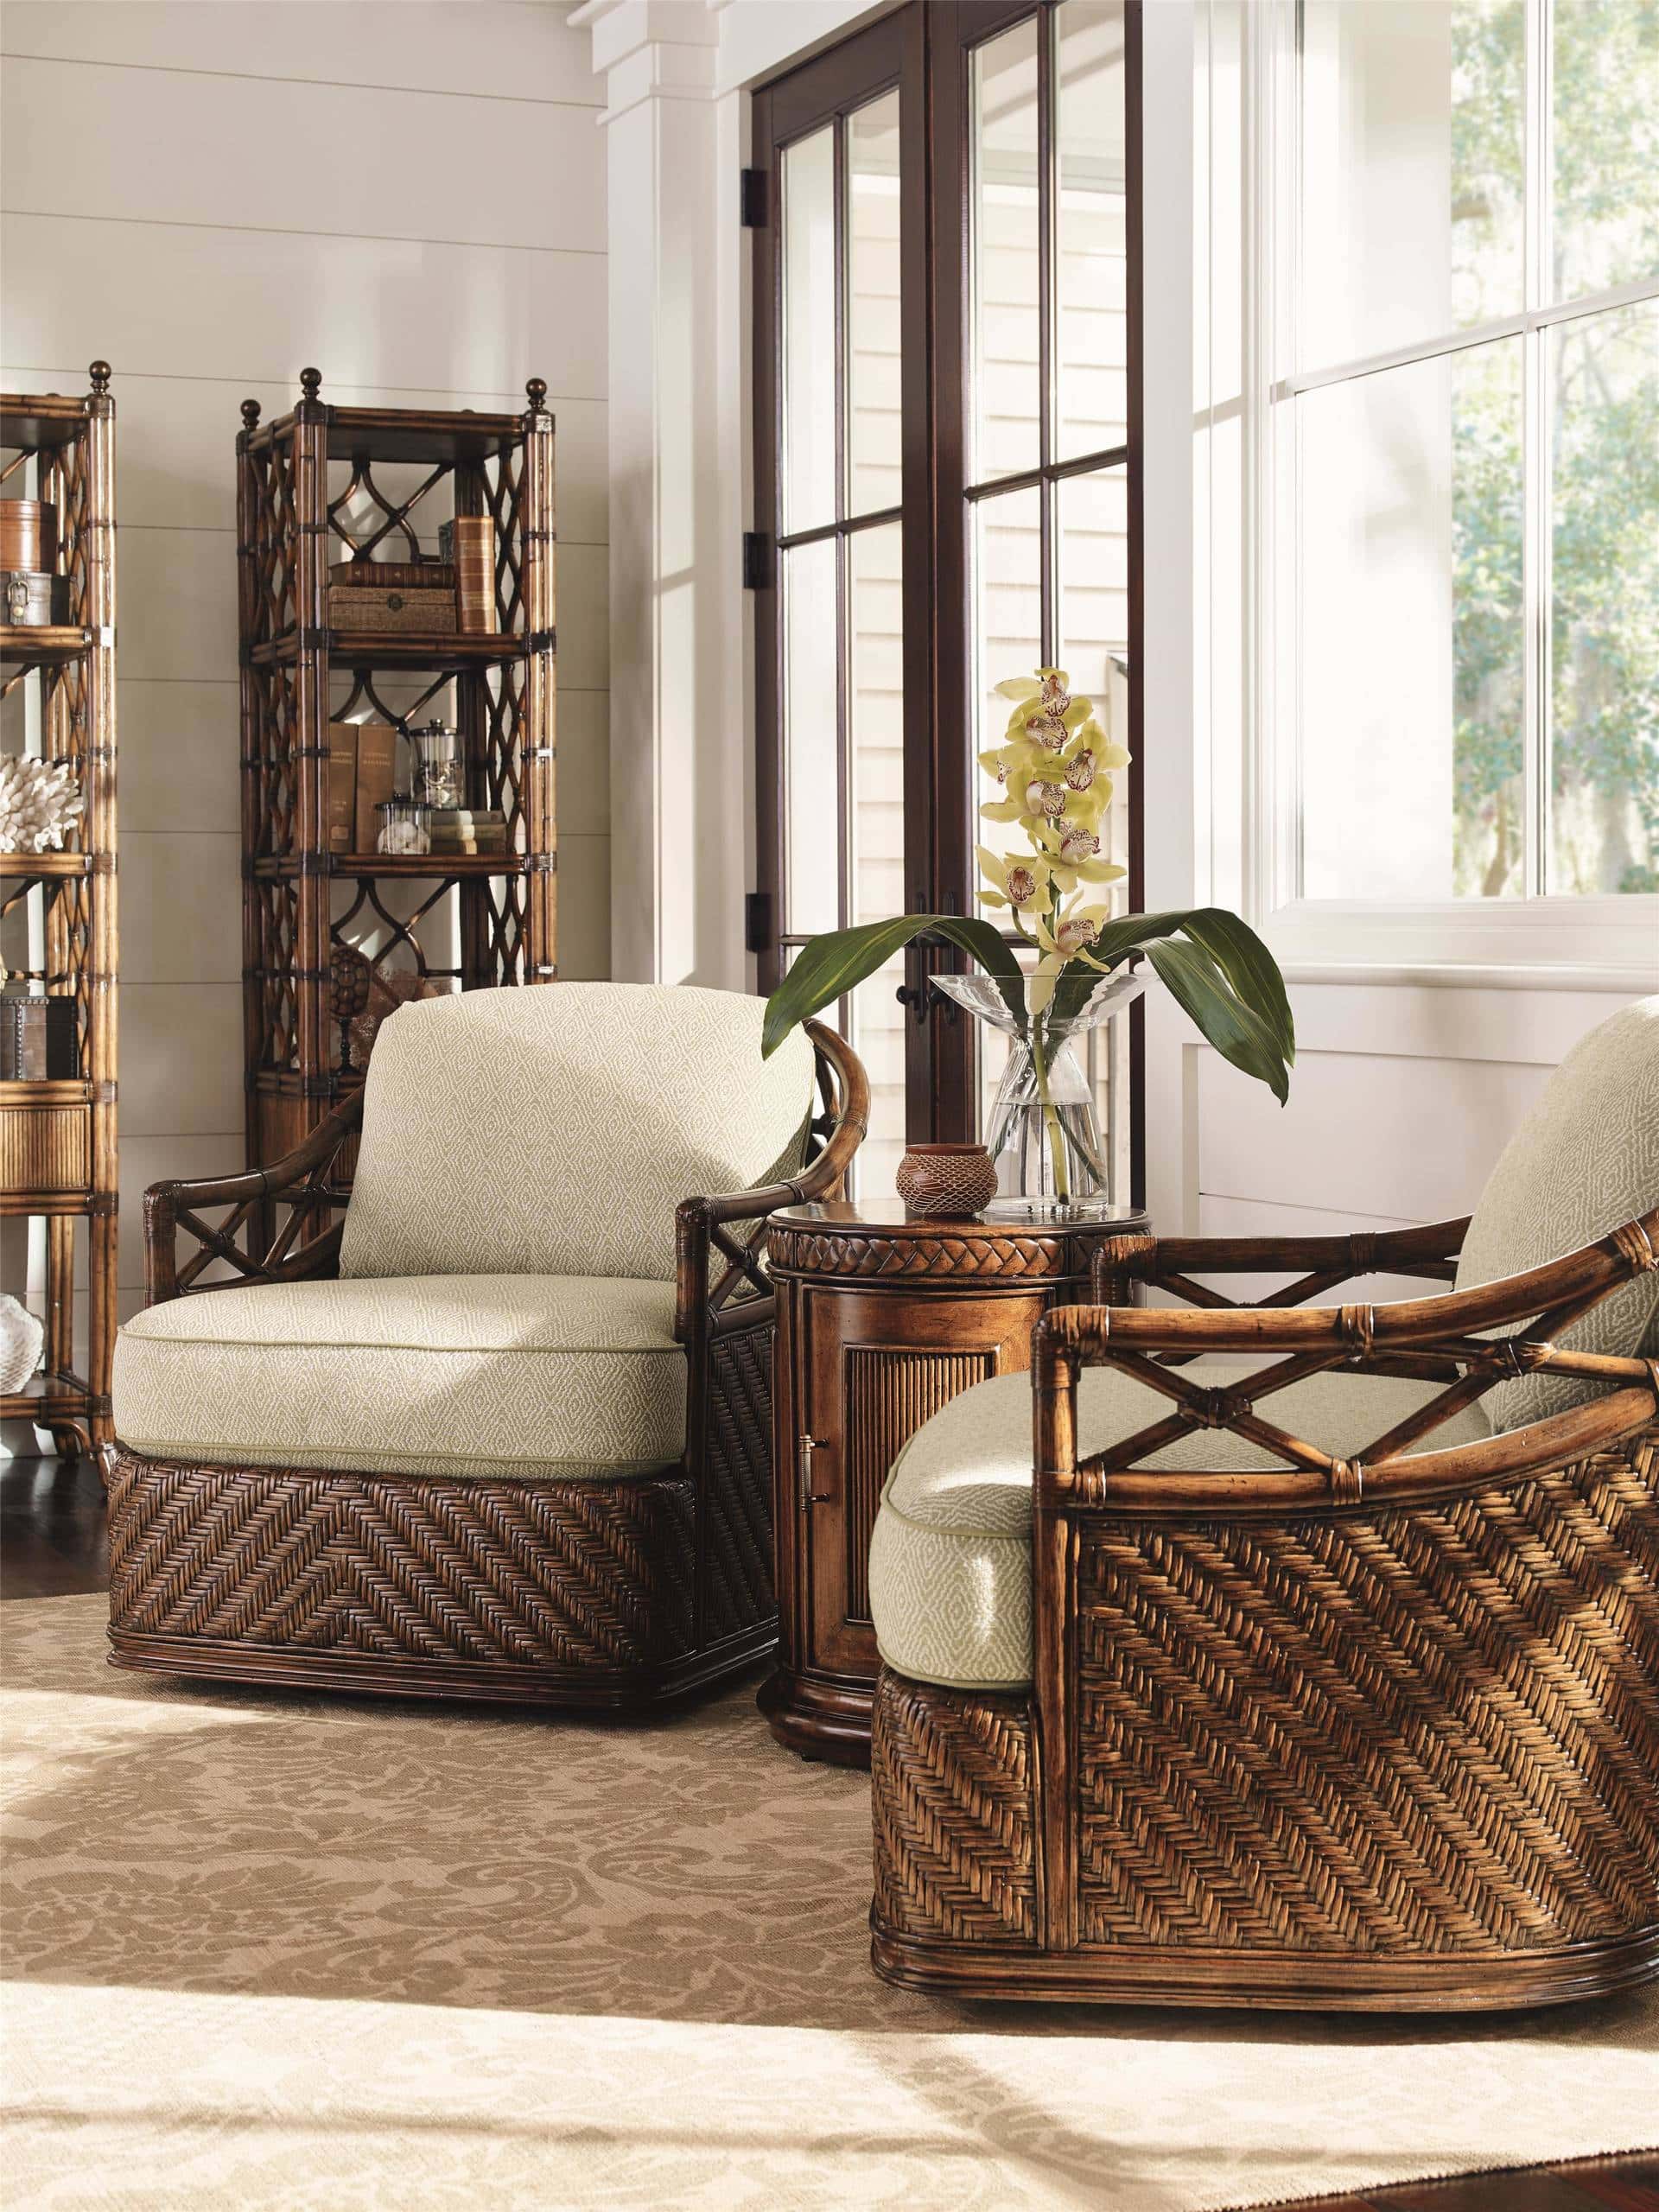 tropical decor living room 